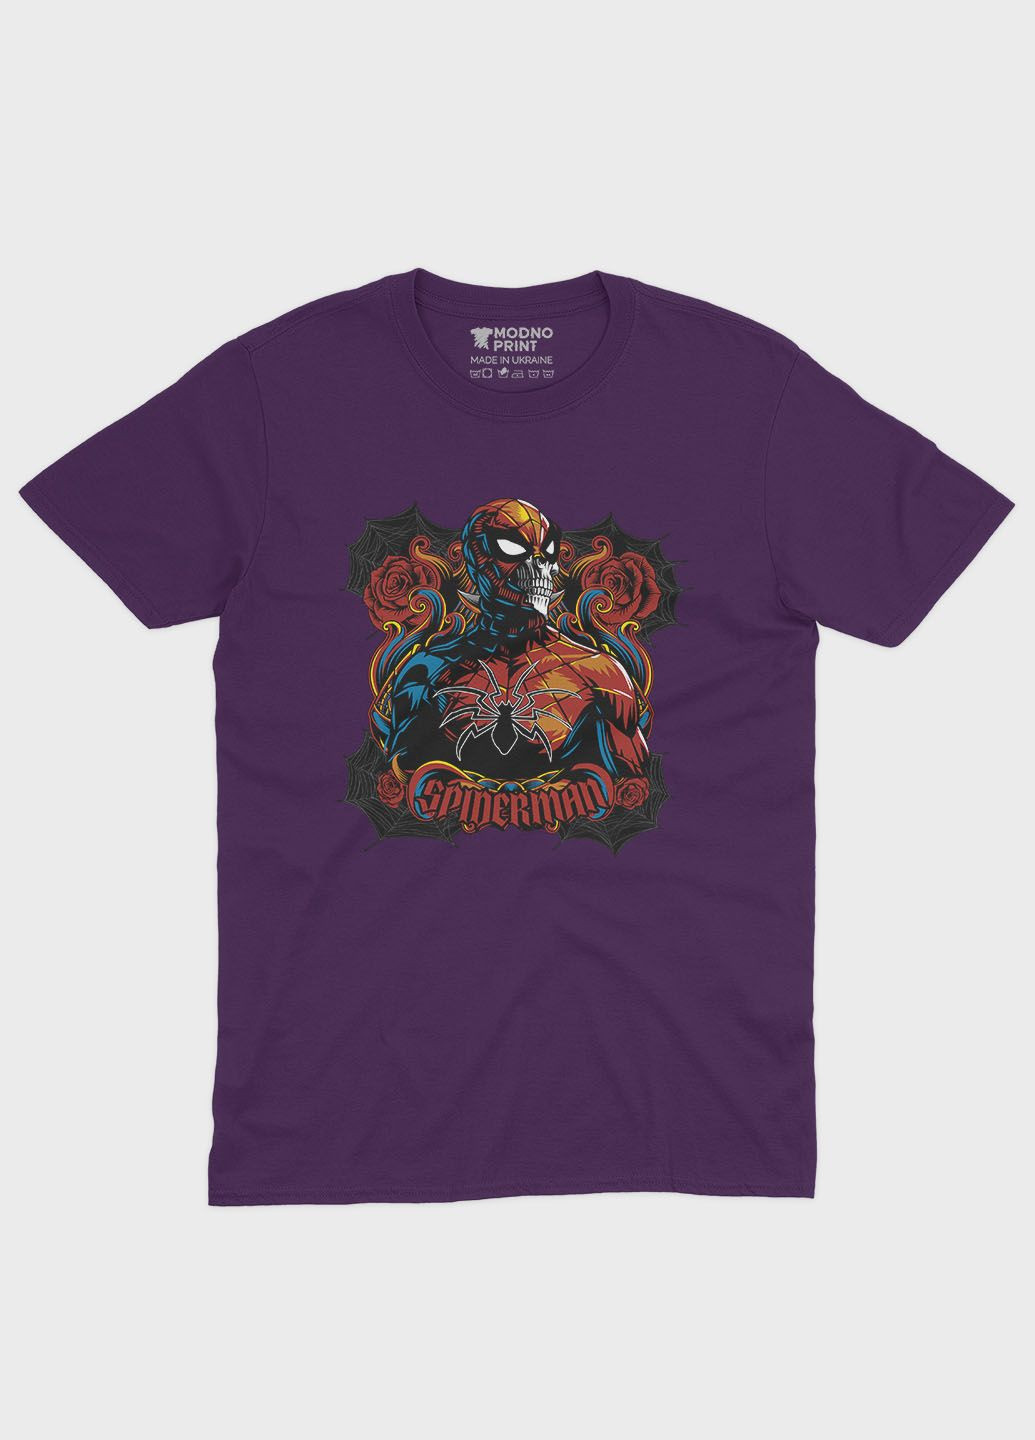 Фиолетовая демисезонная футболка для девочки с принтом супергероя - человек-паук (ts001-1-dby-006-014-040-g) Modno